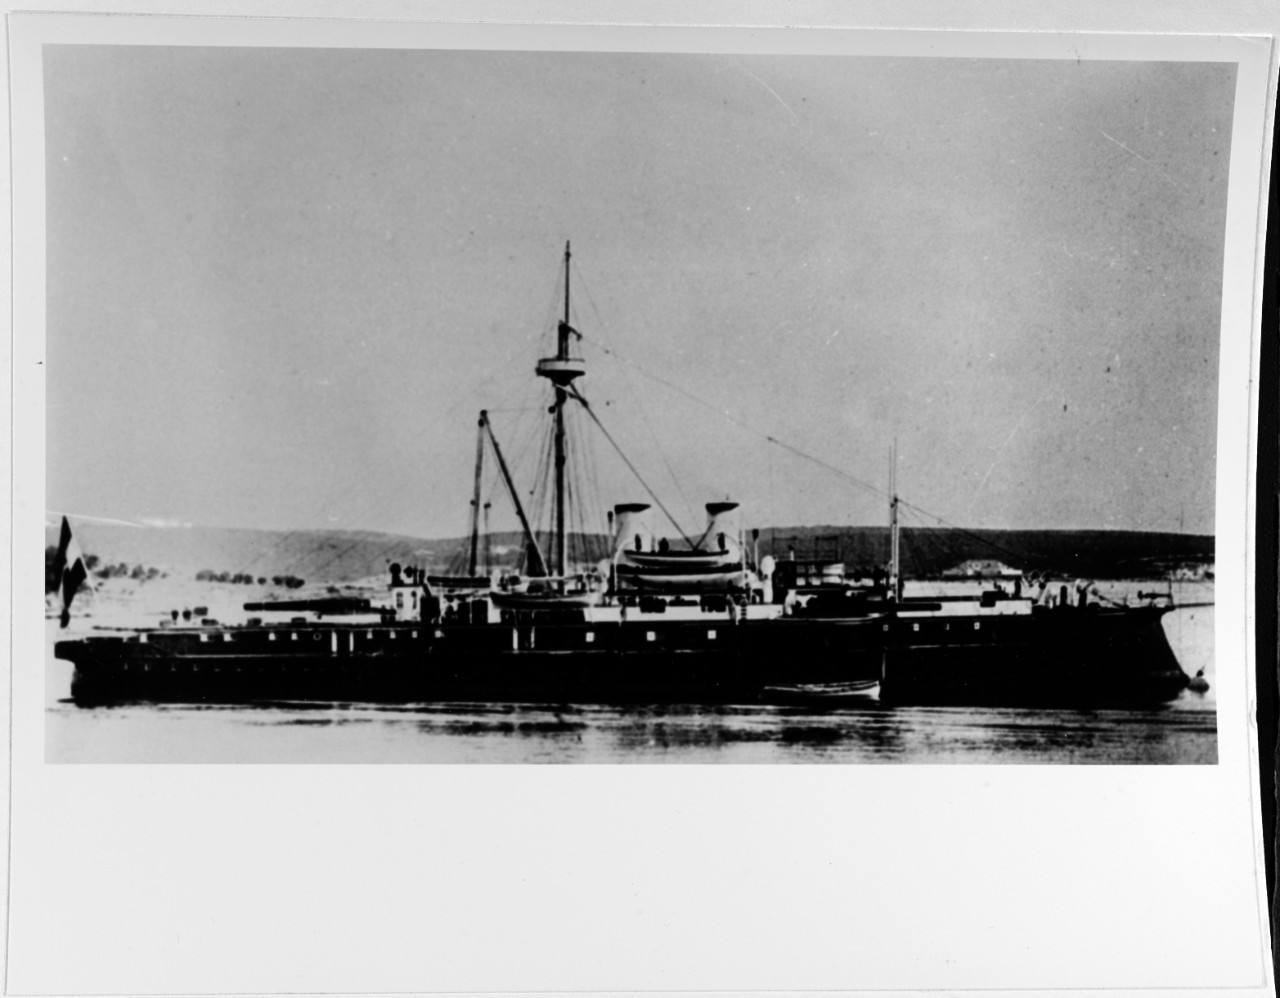 KRONPRINZ ERZHERZOG RUDOLF (Austrian Battleship, 1887-1922)